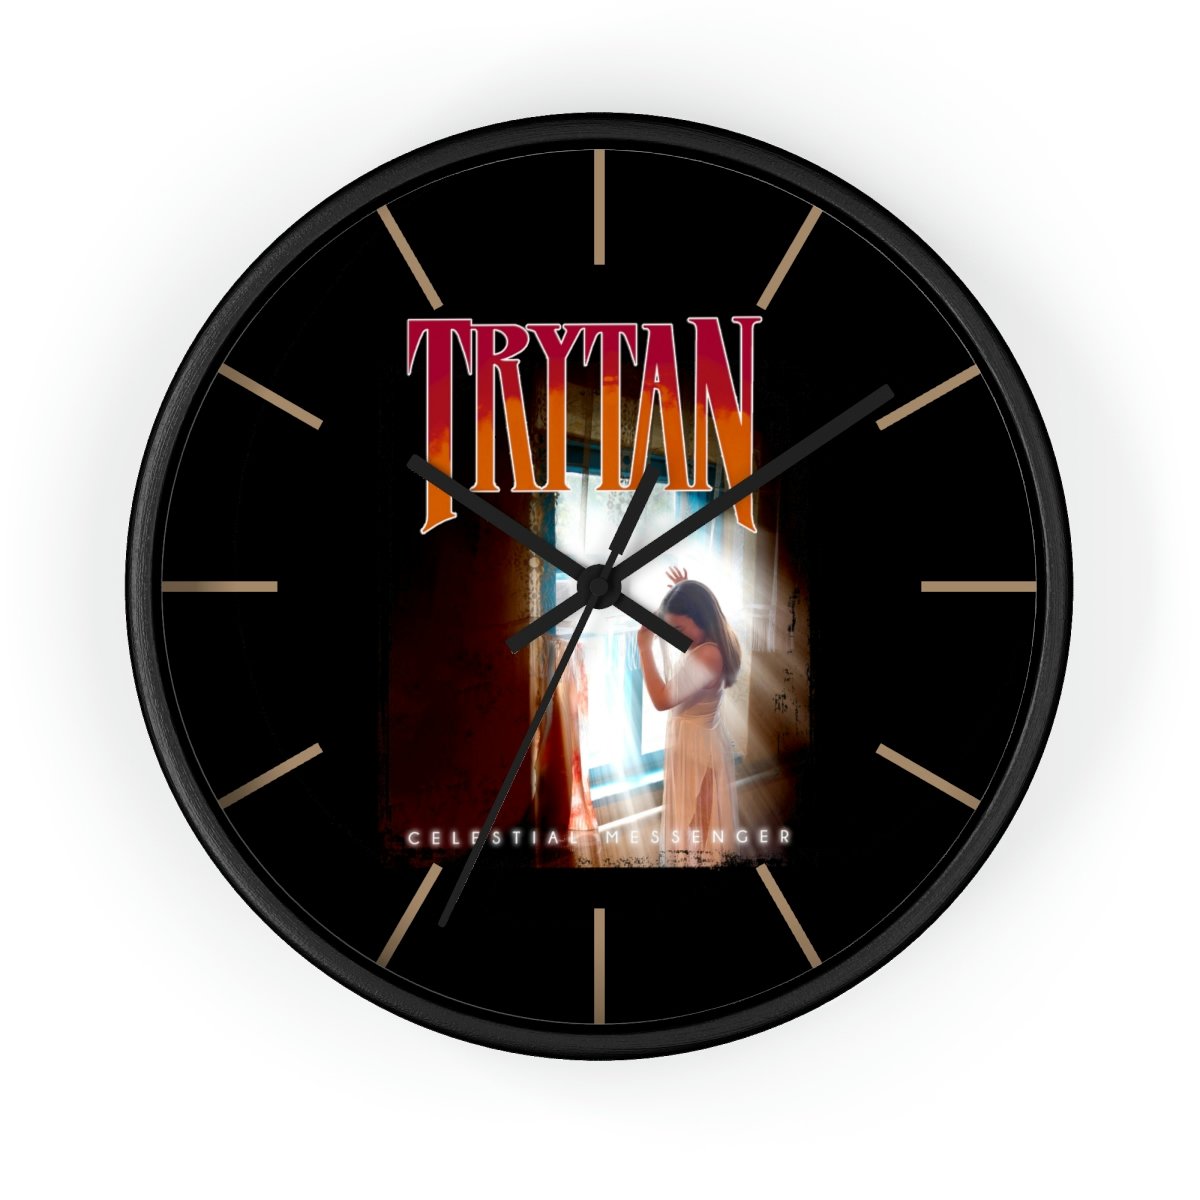 Trytan – Celestial Messenger 2020 Wall clock